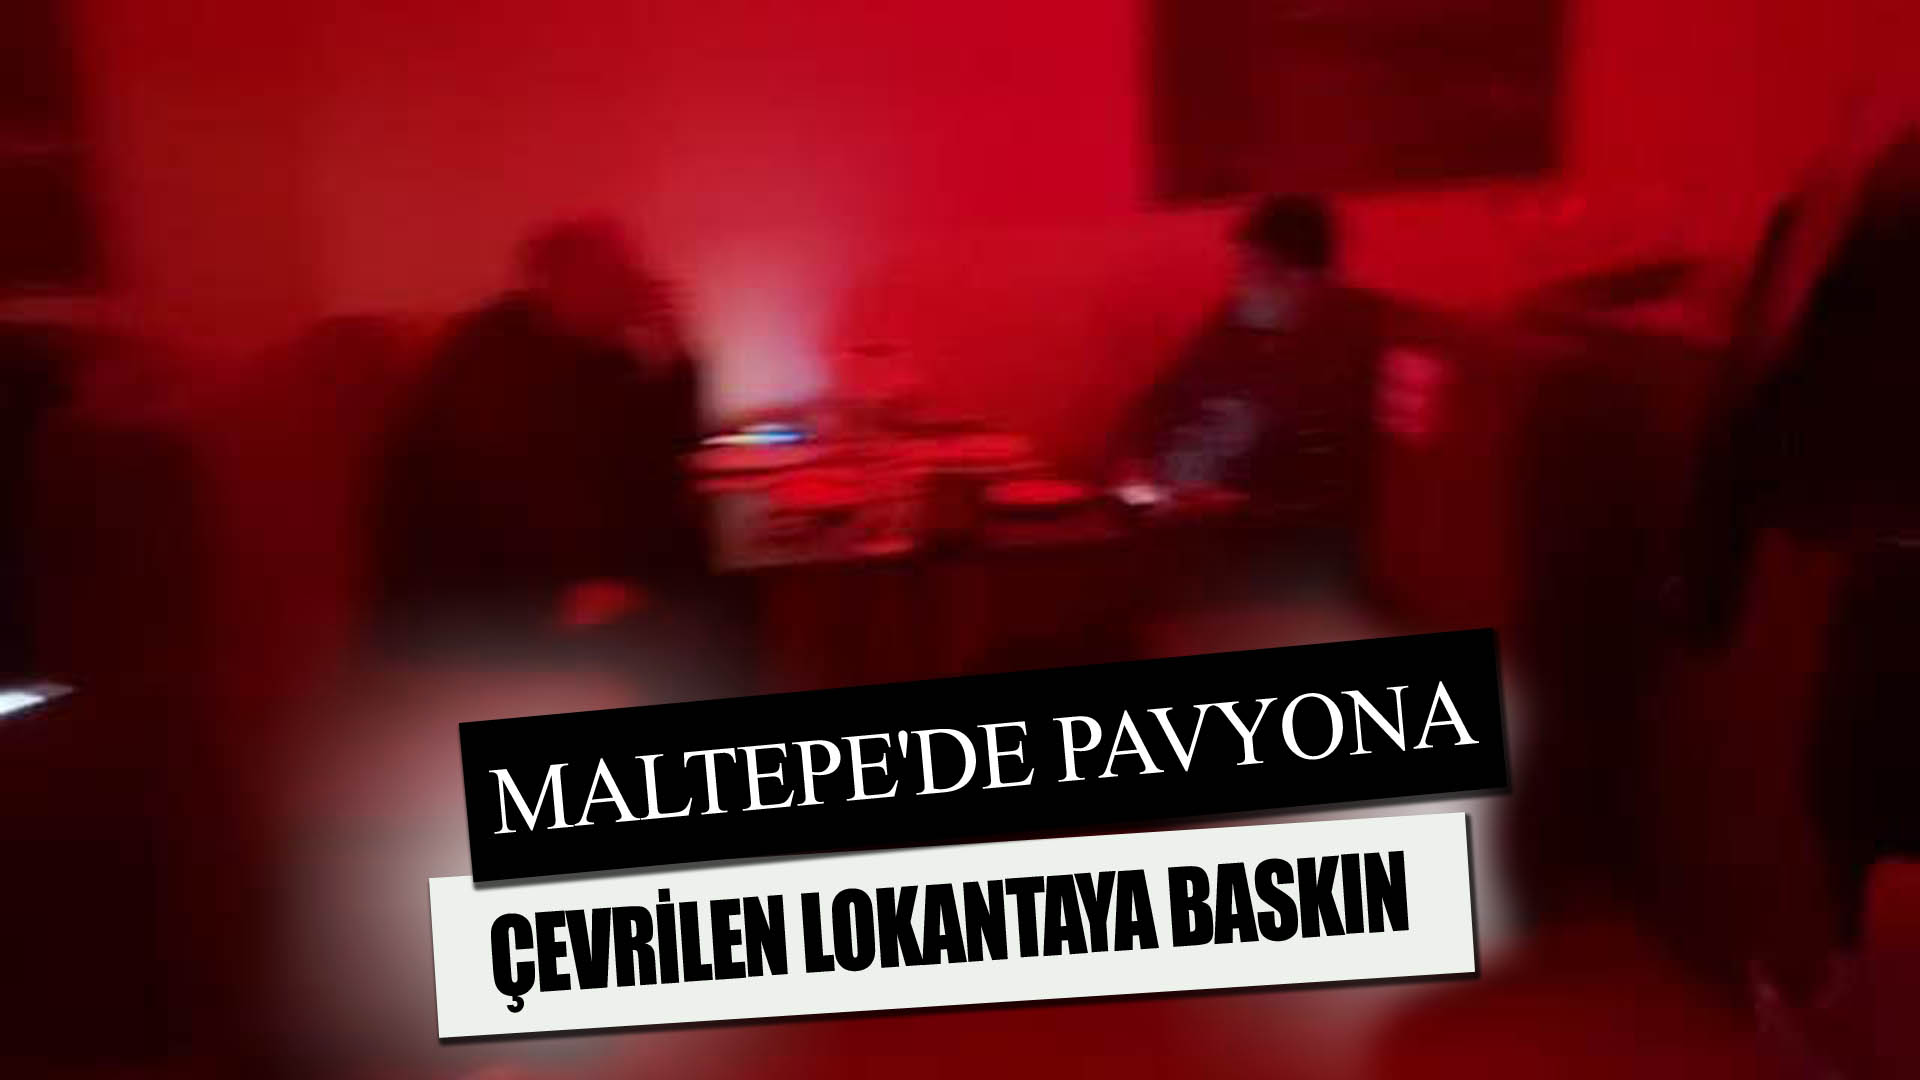 MALTEPE’DE PAVYONA ÇEVRİLEN LOKANTAYA BASKIN